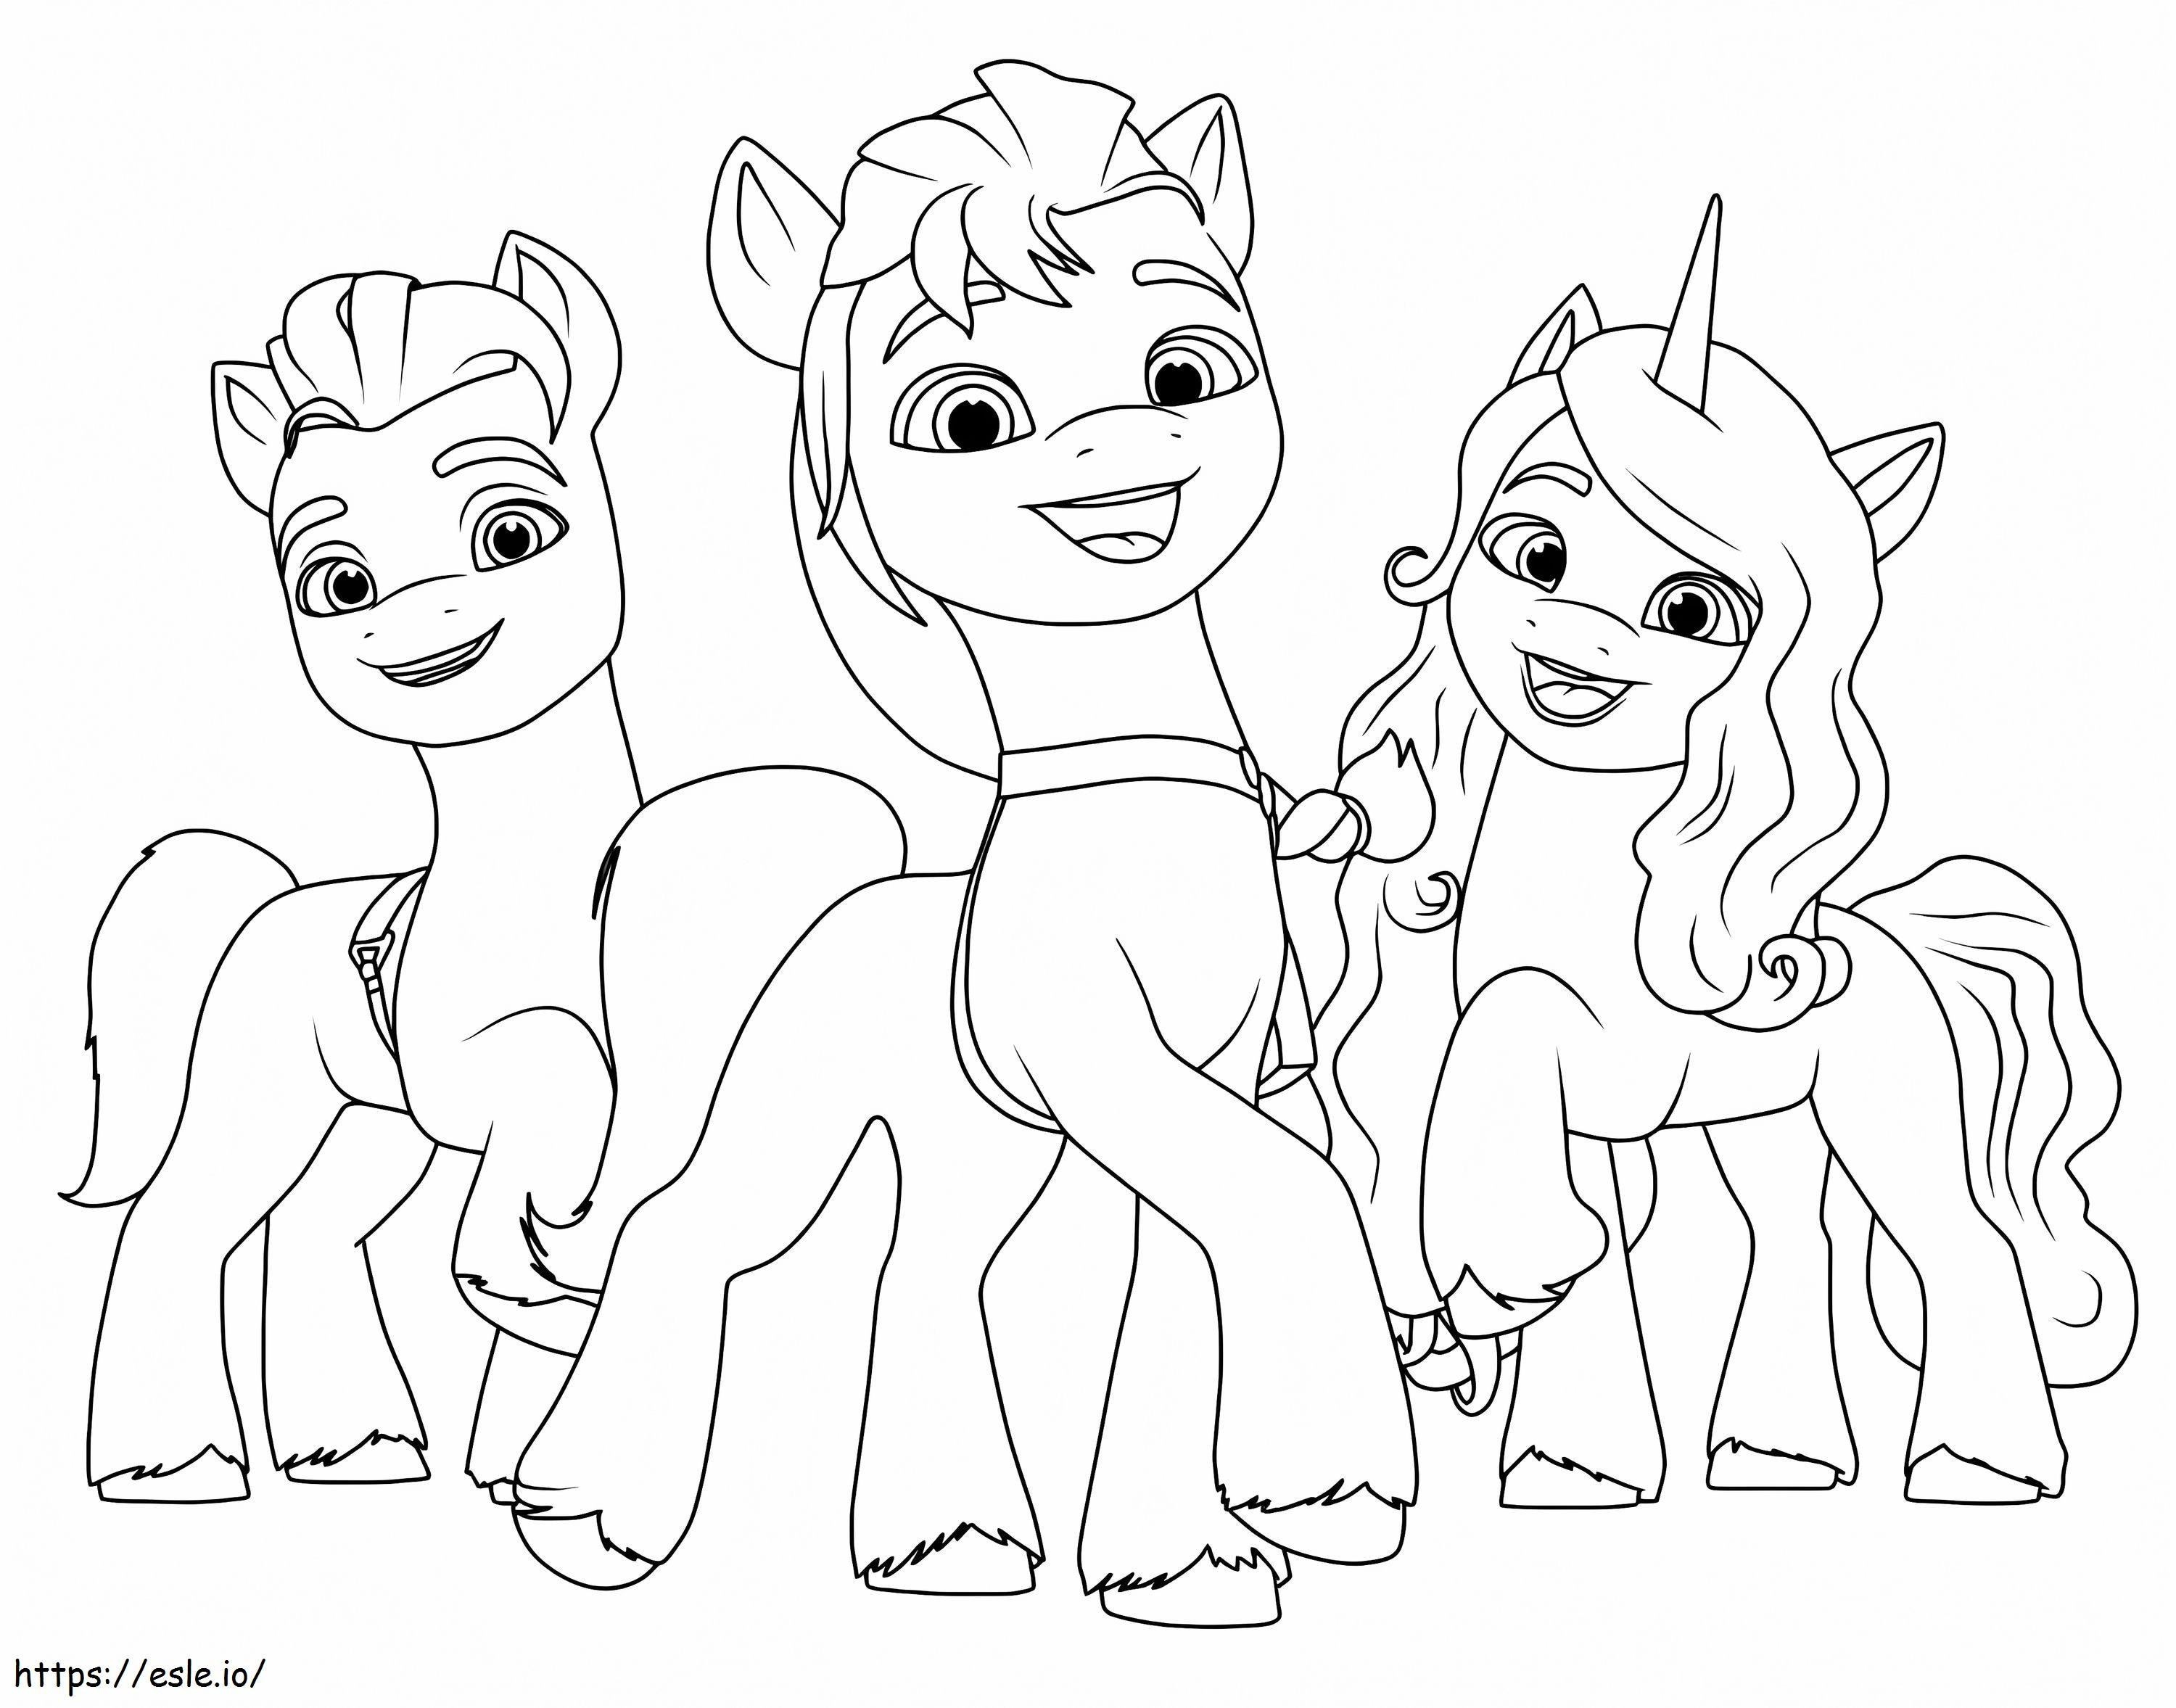 My Little Pony Generasi Baru Untuk Anak-Anak Gambar Mewarnai